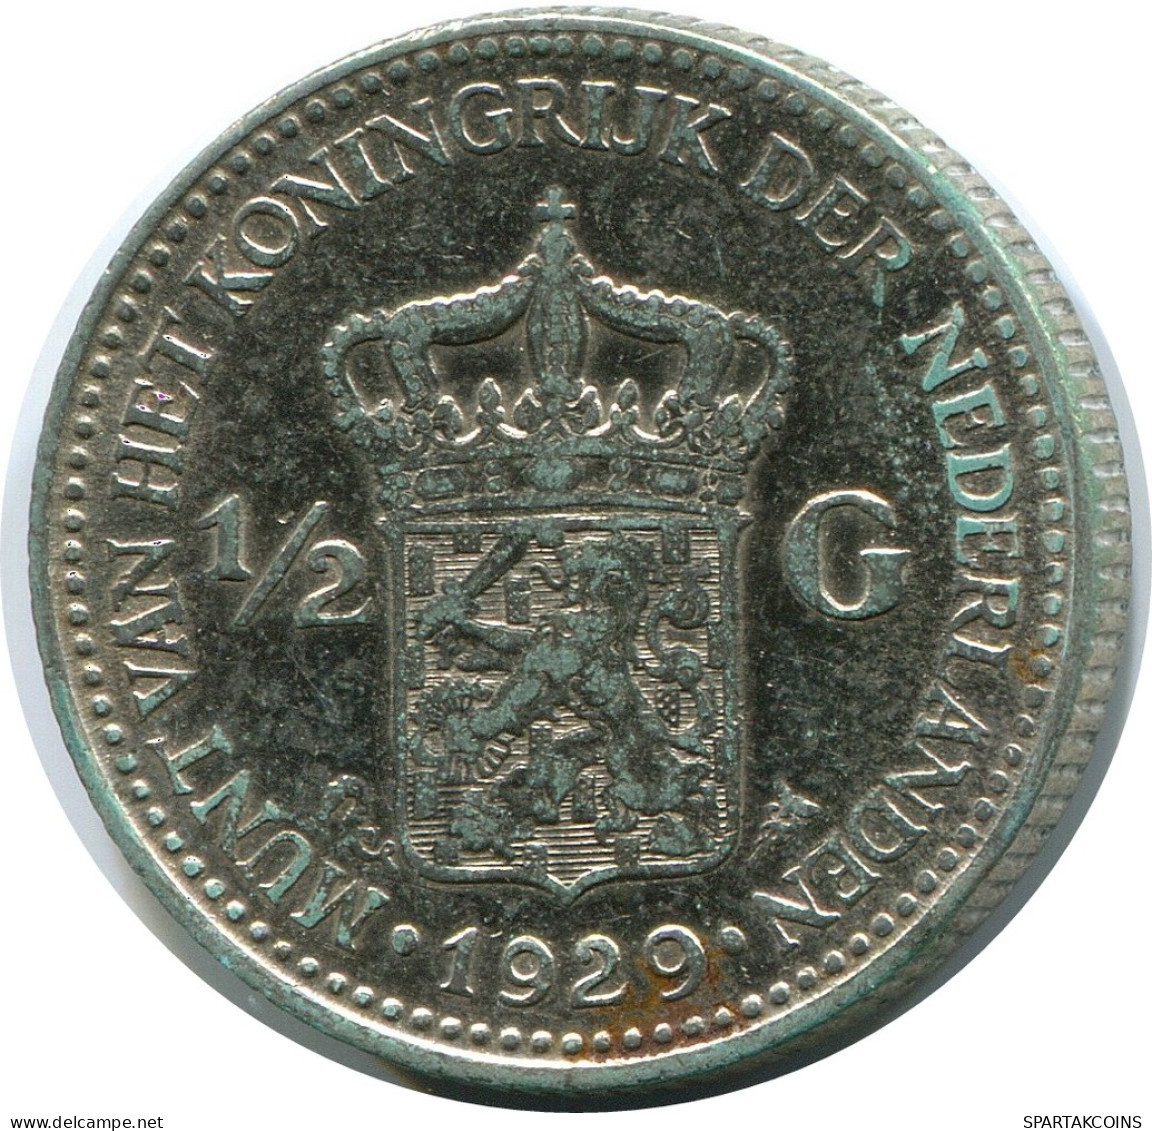 1/2 GULDEN 1929 NETHERLANDS SILVER Coin #AR937.U - 1/2 Gulden